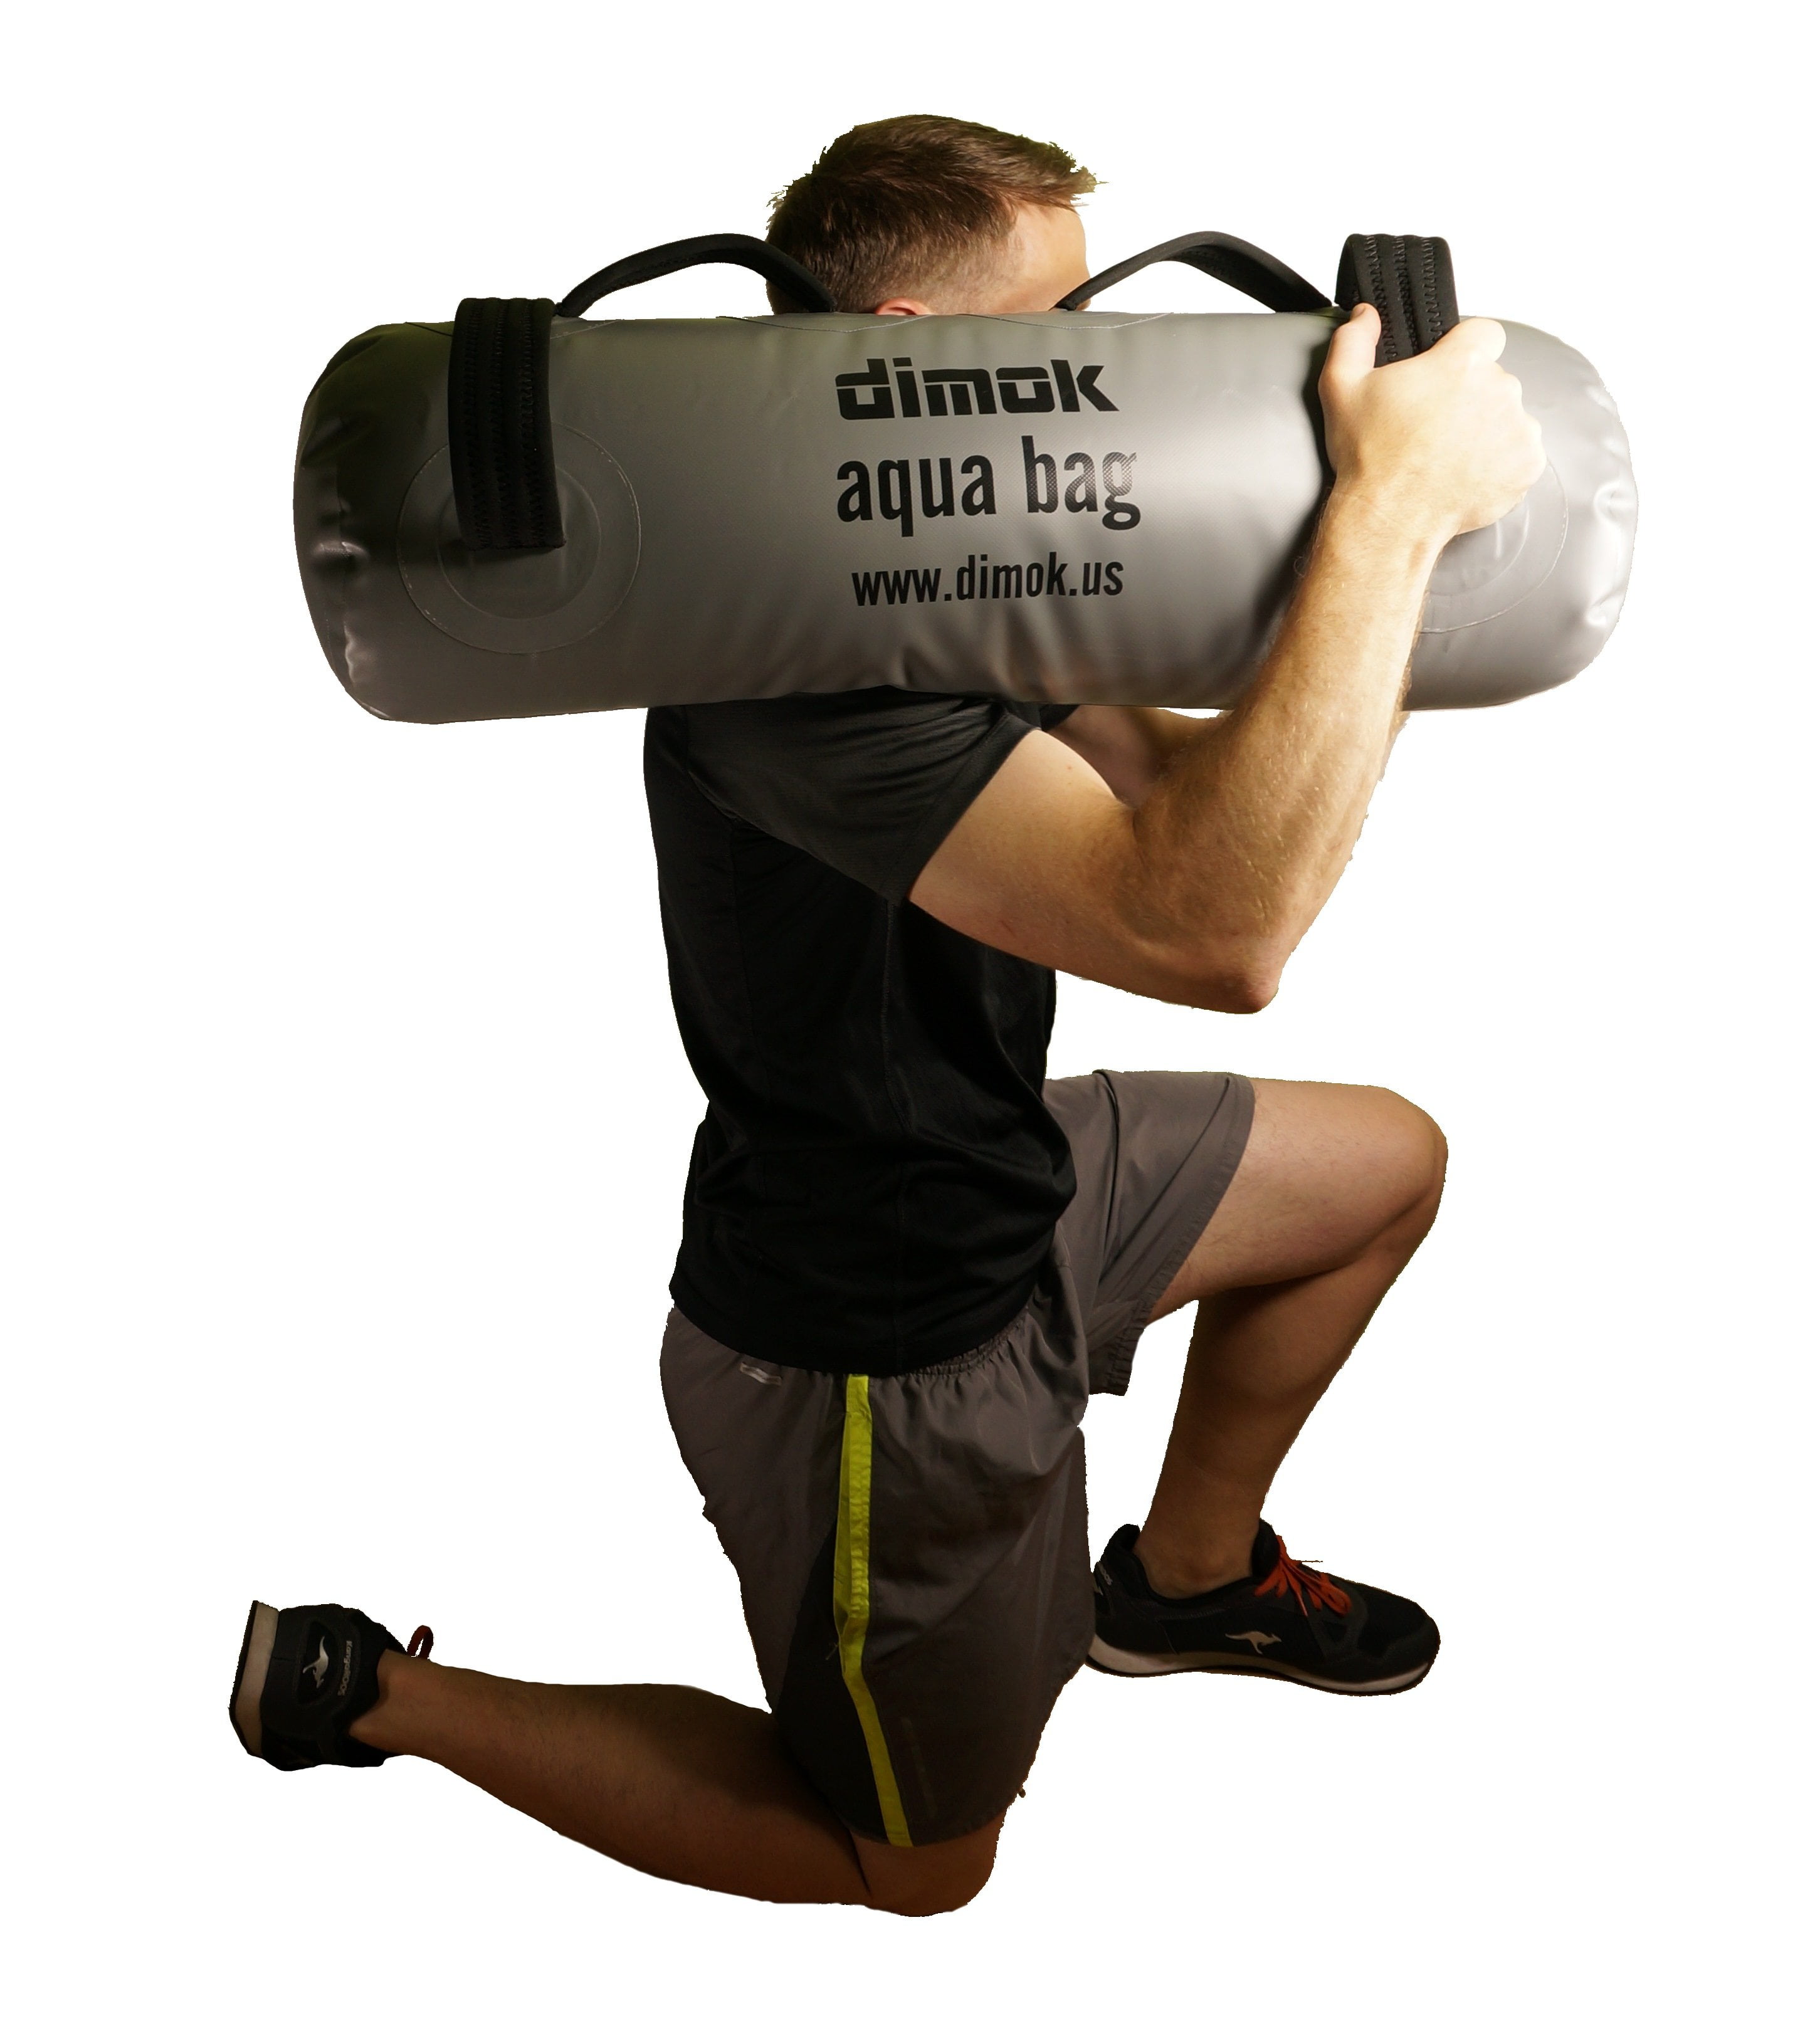 Workout Sandbag Aqua Bag Portable Stability Fitness Equipment for Core Gym 